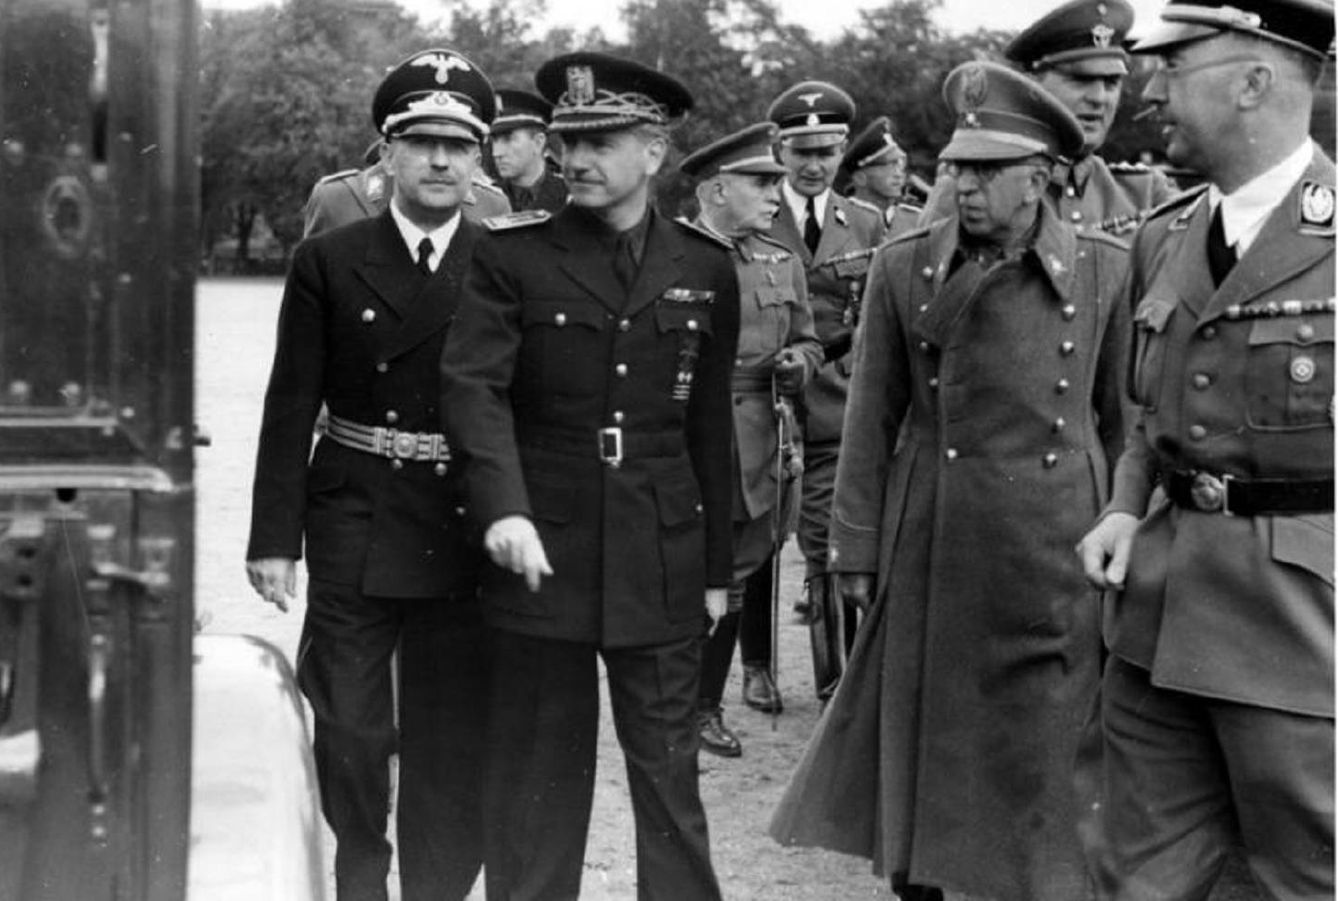 Serrano Suñer en el centro con Heinrich Himmler, en primer plano a la izquierda.